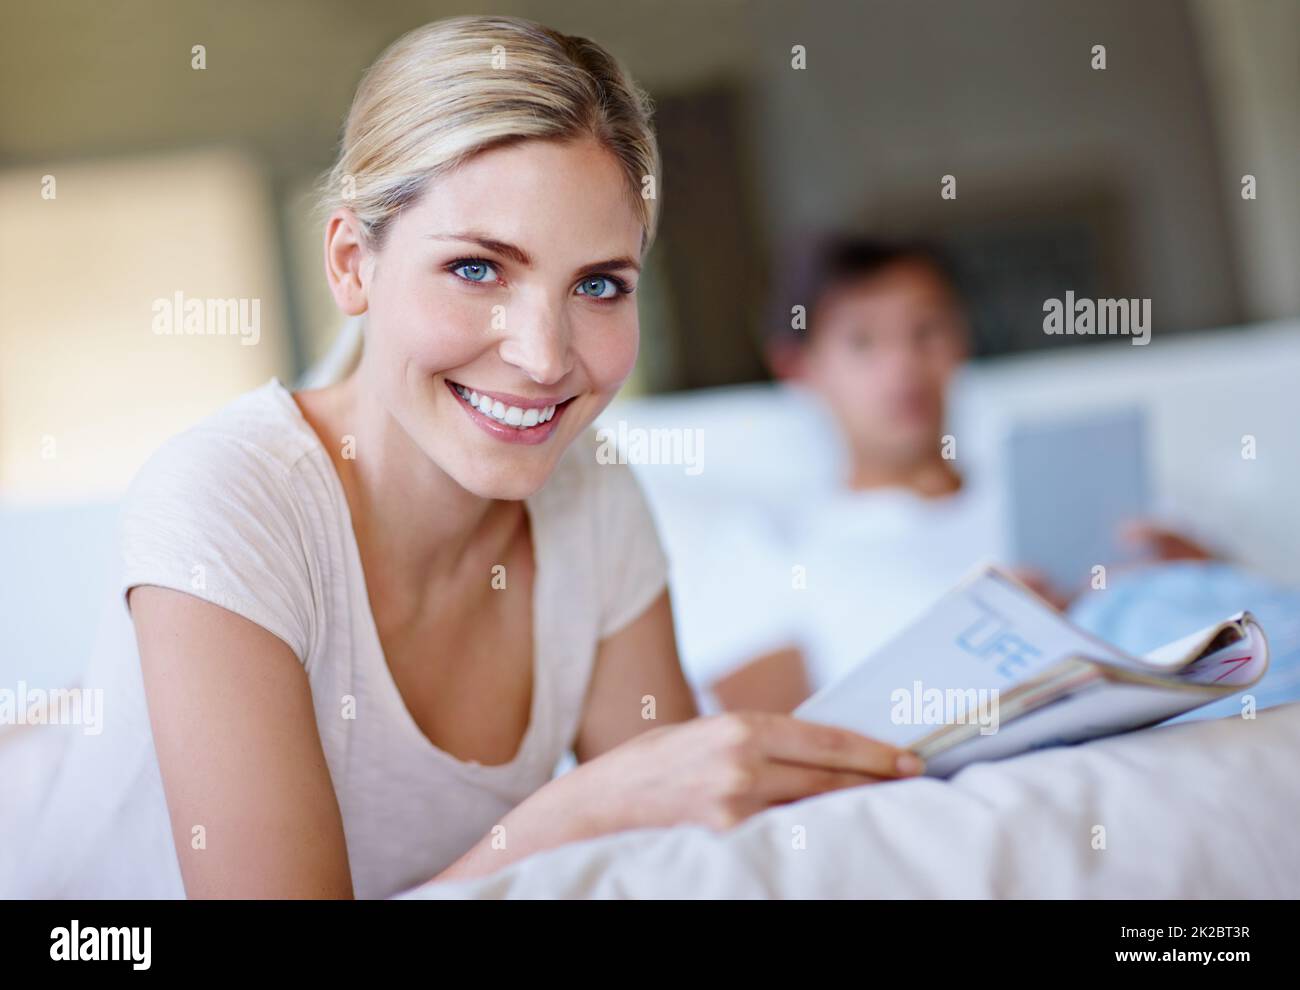 Girare la pagina per un più felice voi. Foto di una giovane donna felice sdraiata a letto e leggendo una rivista mentre suo marito usa un tablet digitale sullo sfondo. Foto Stock